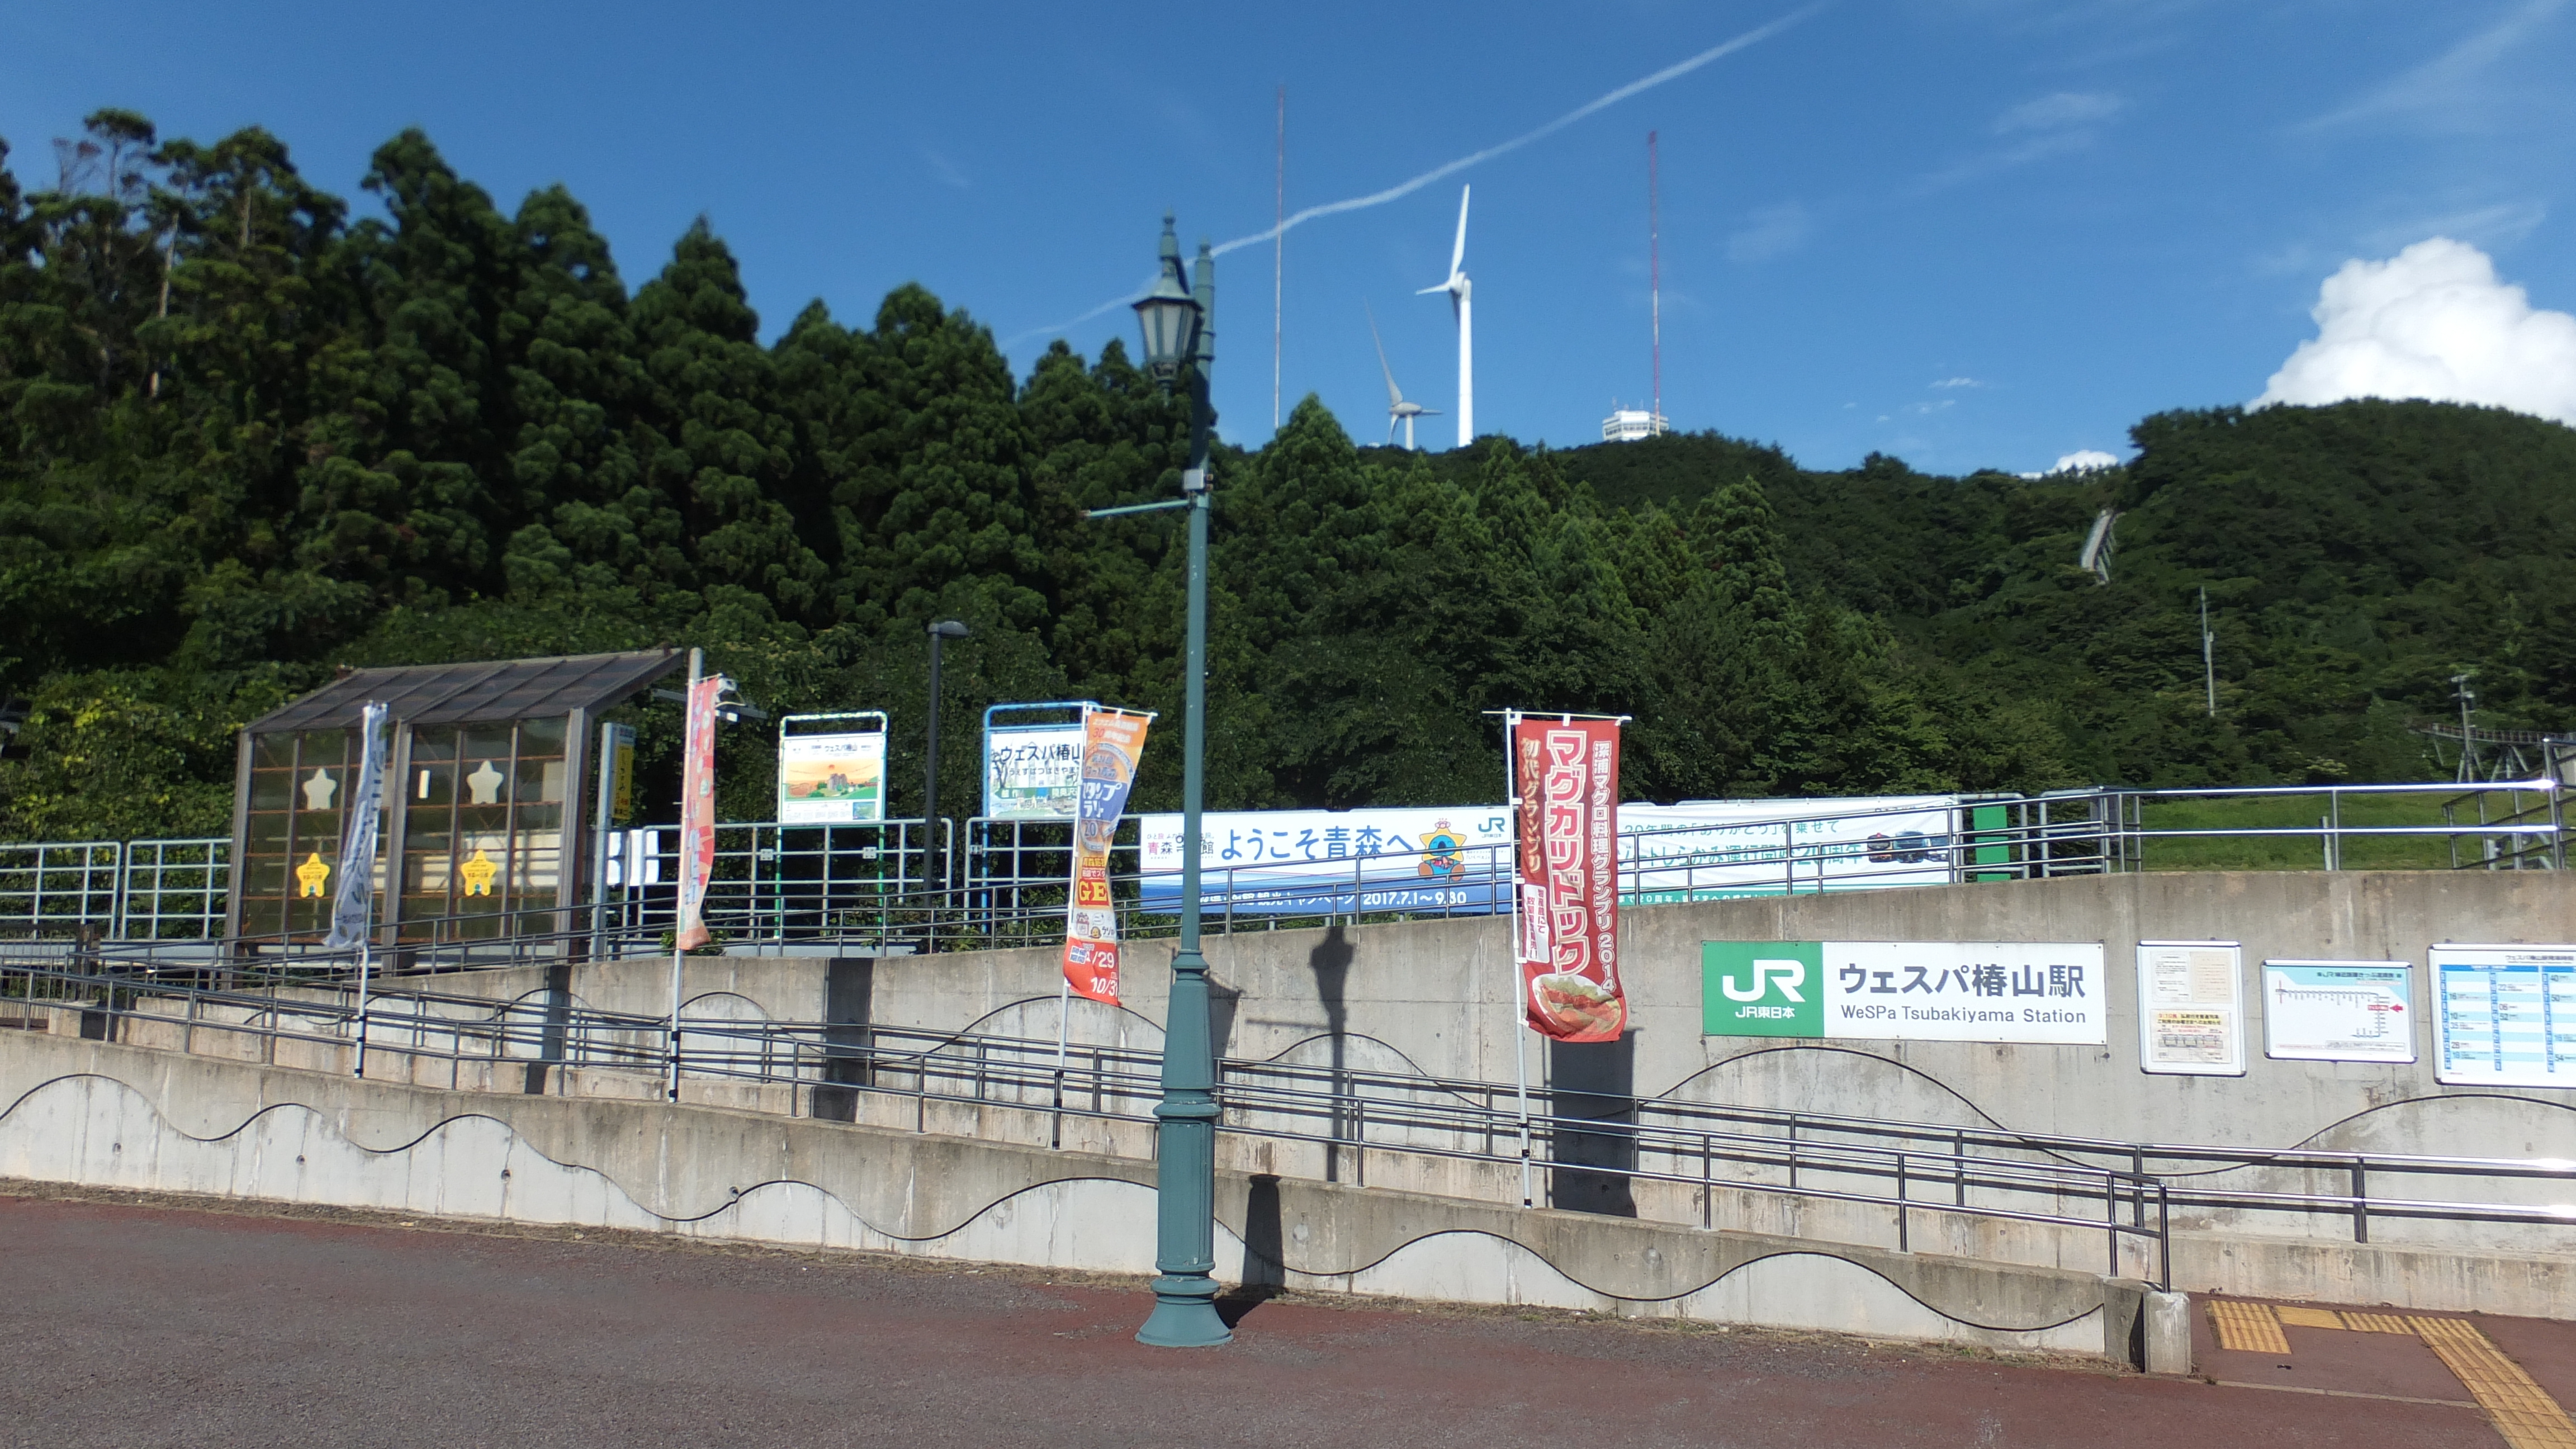 ウェスパ椿山駅 Wikipedia